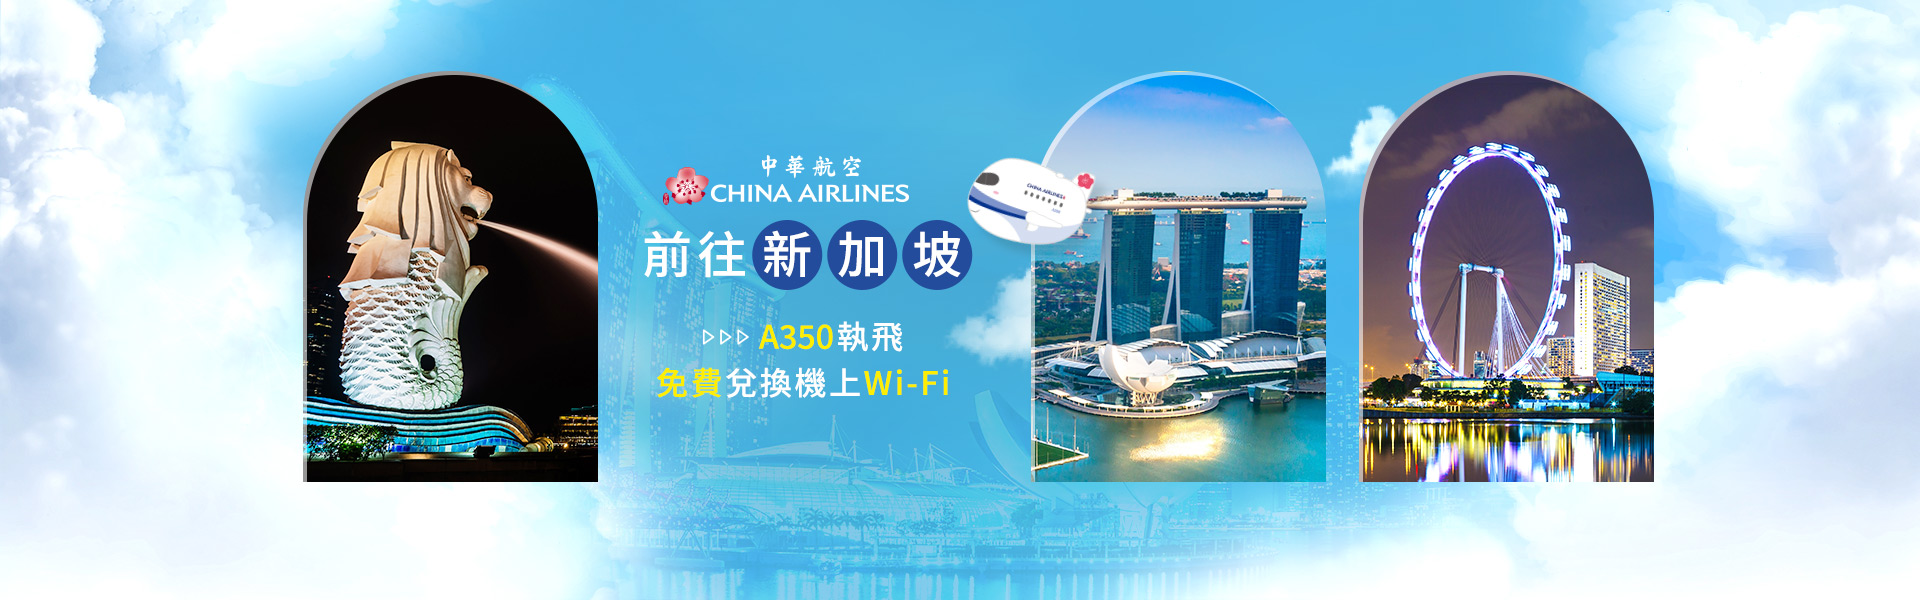 中華航空 前往新加坡 免費兌換機上Wi-Fi